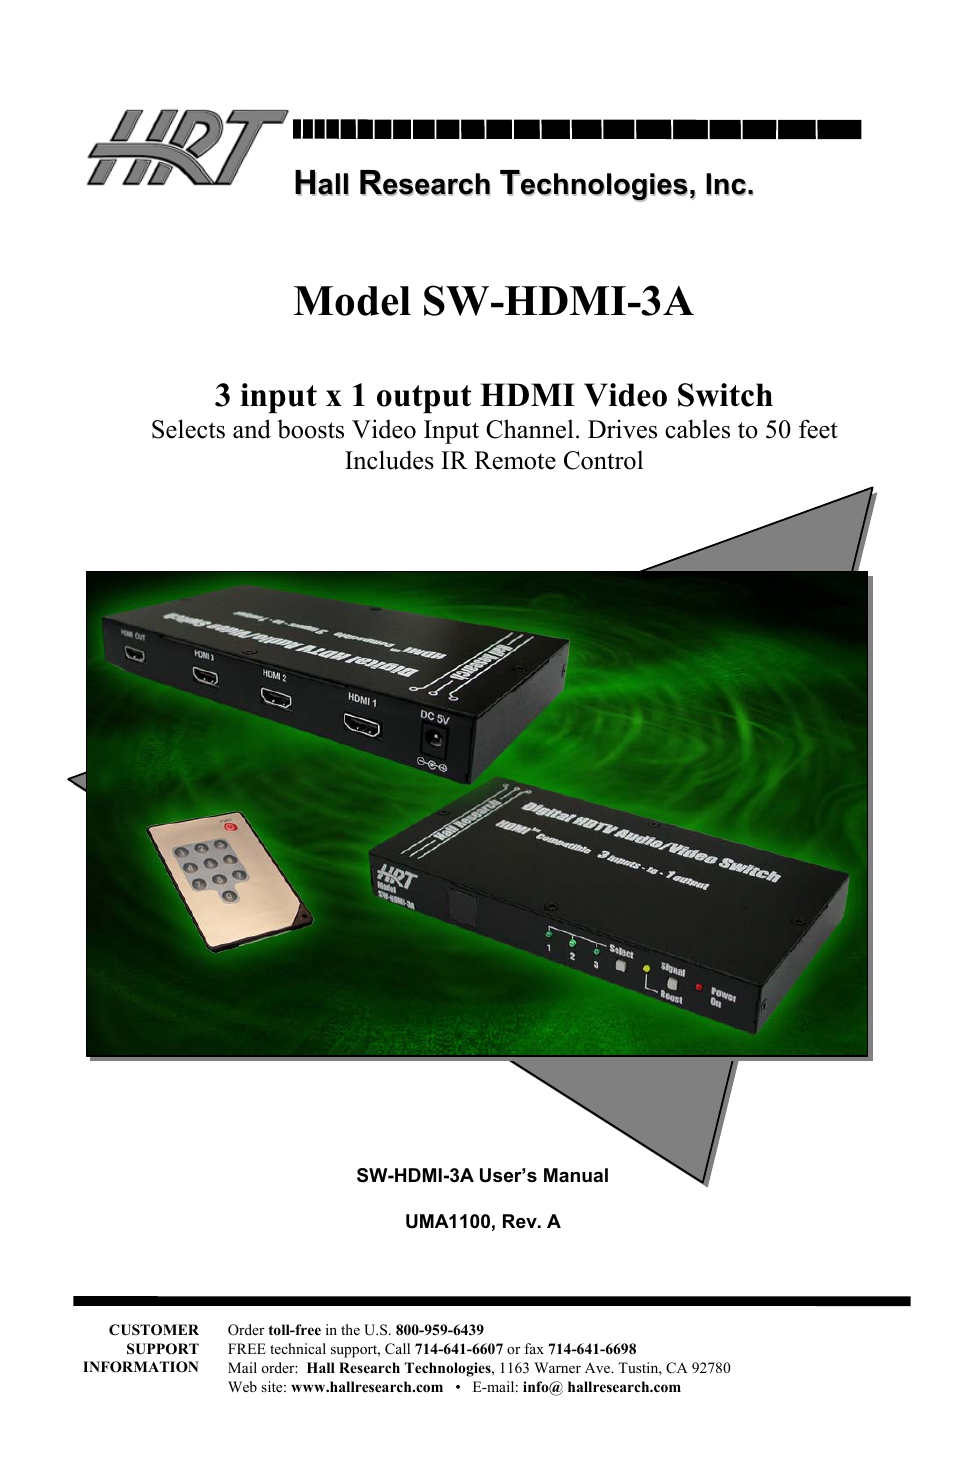 SW-HDMI-3A